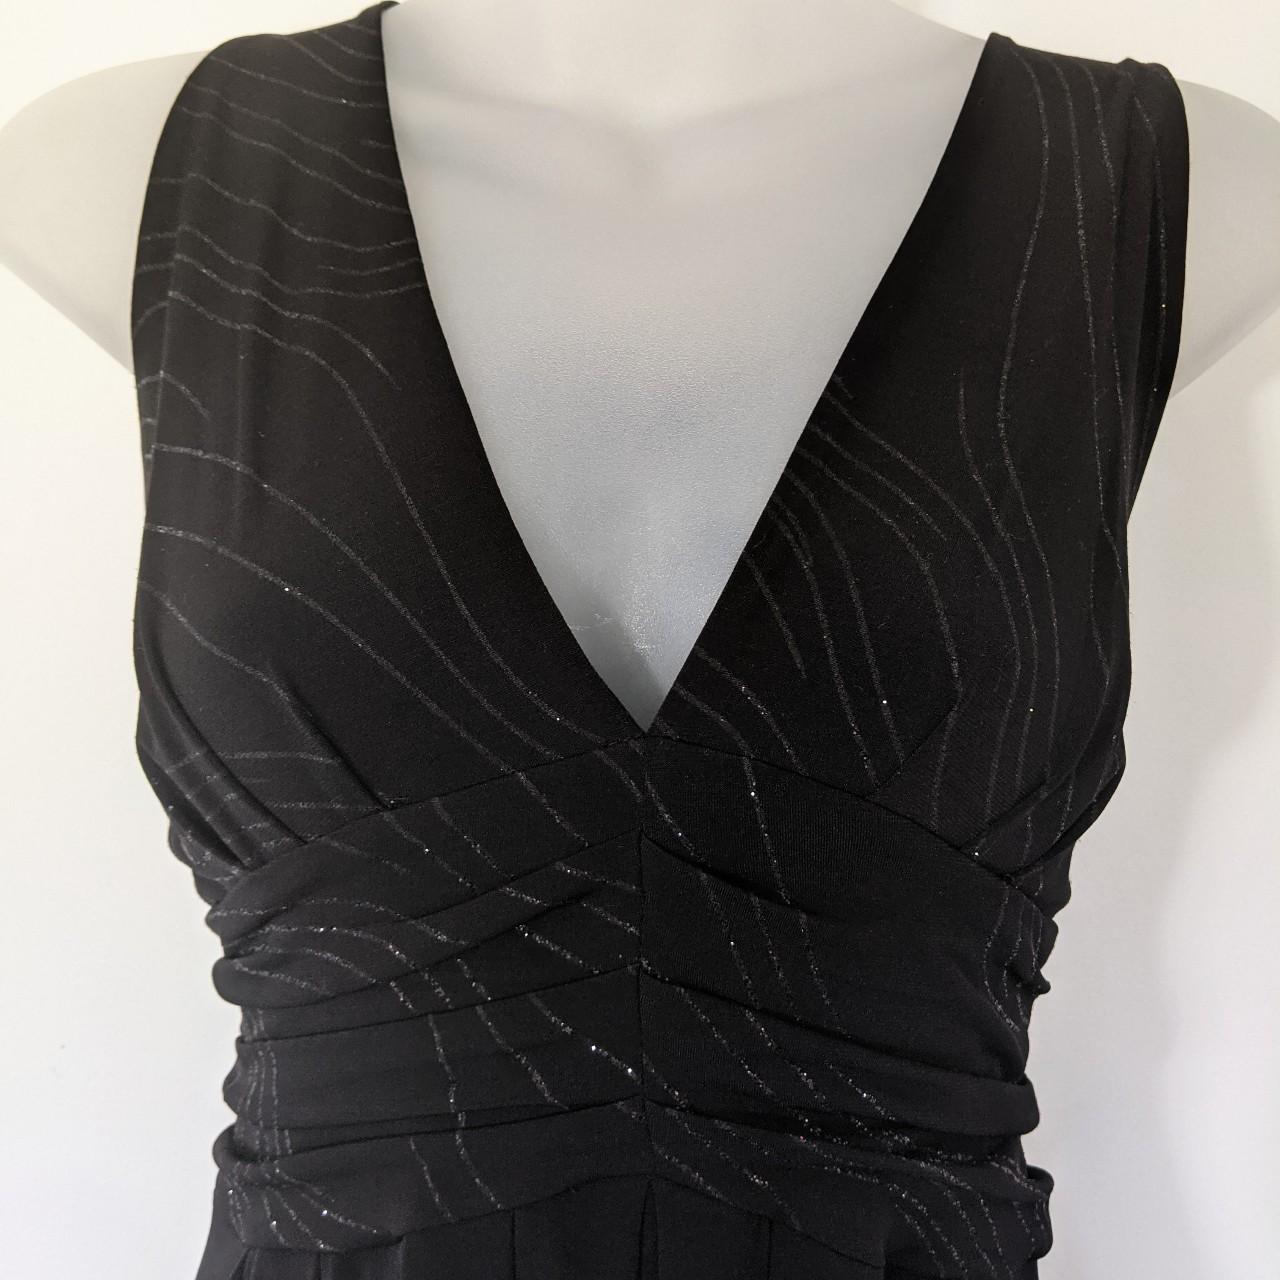 Vintage Forcast Black Dress Large Made in... - Depop